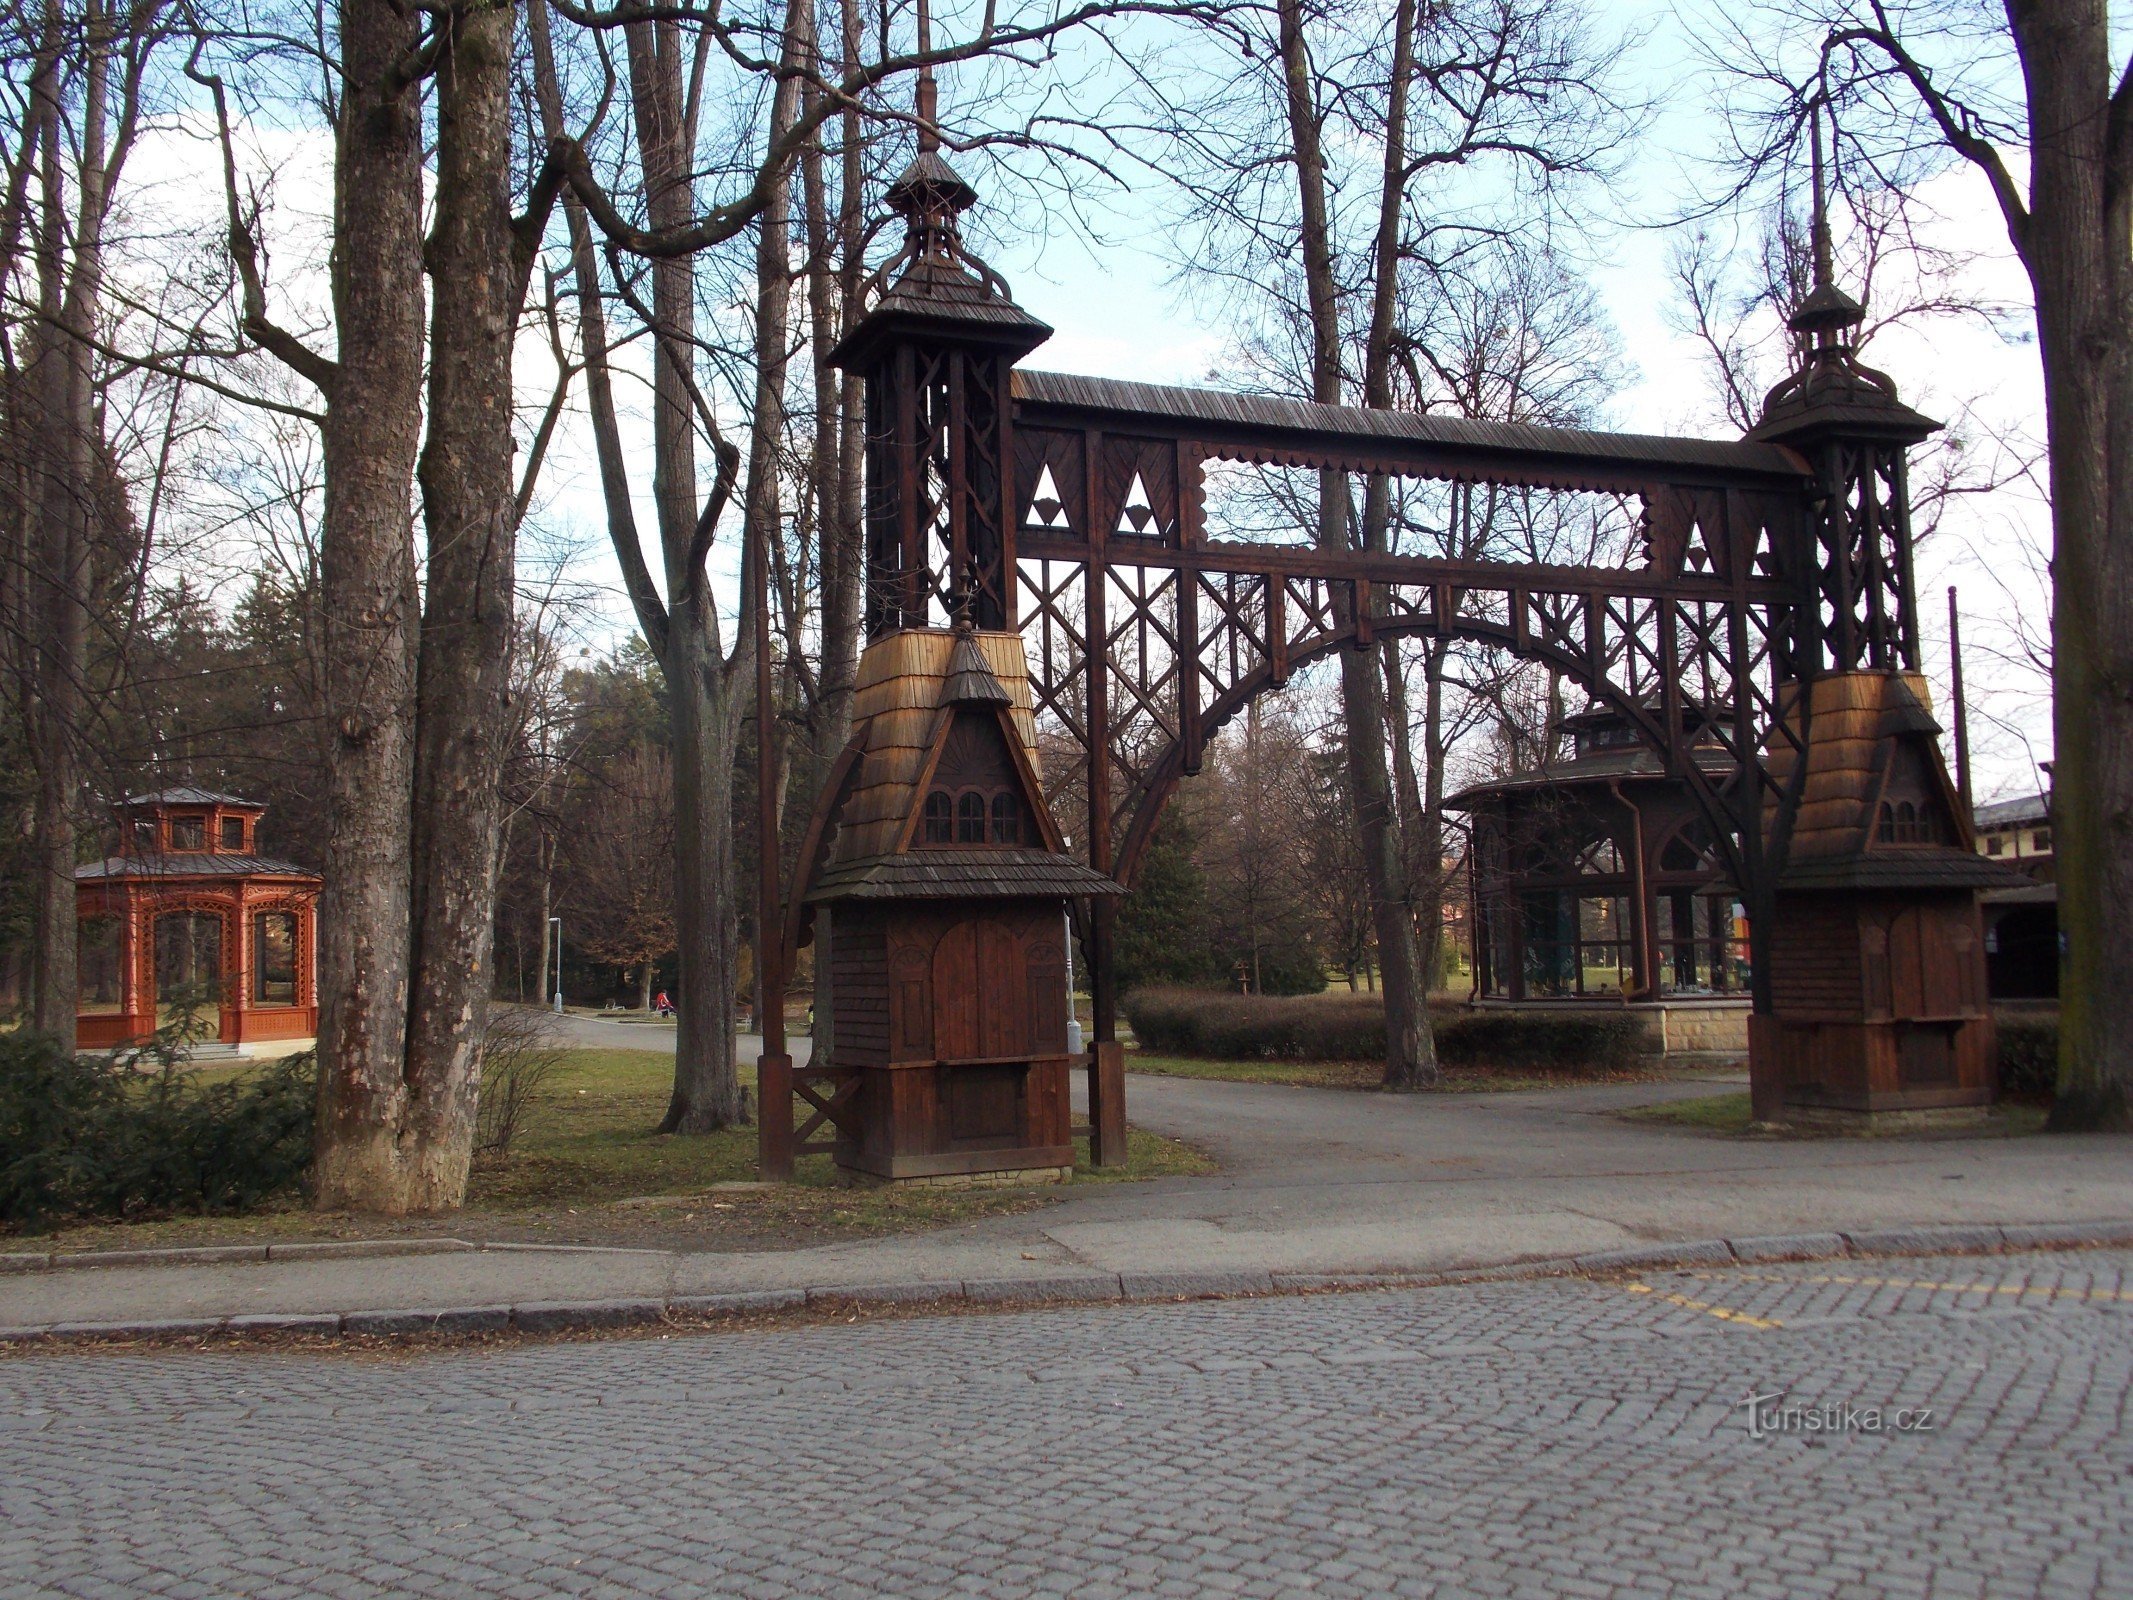 漫步在 Rožnov pod Radhoštěm 的温泉公园